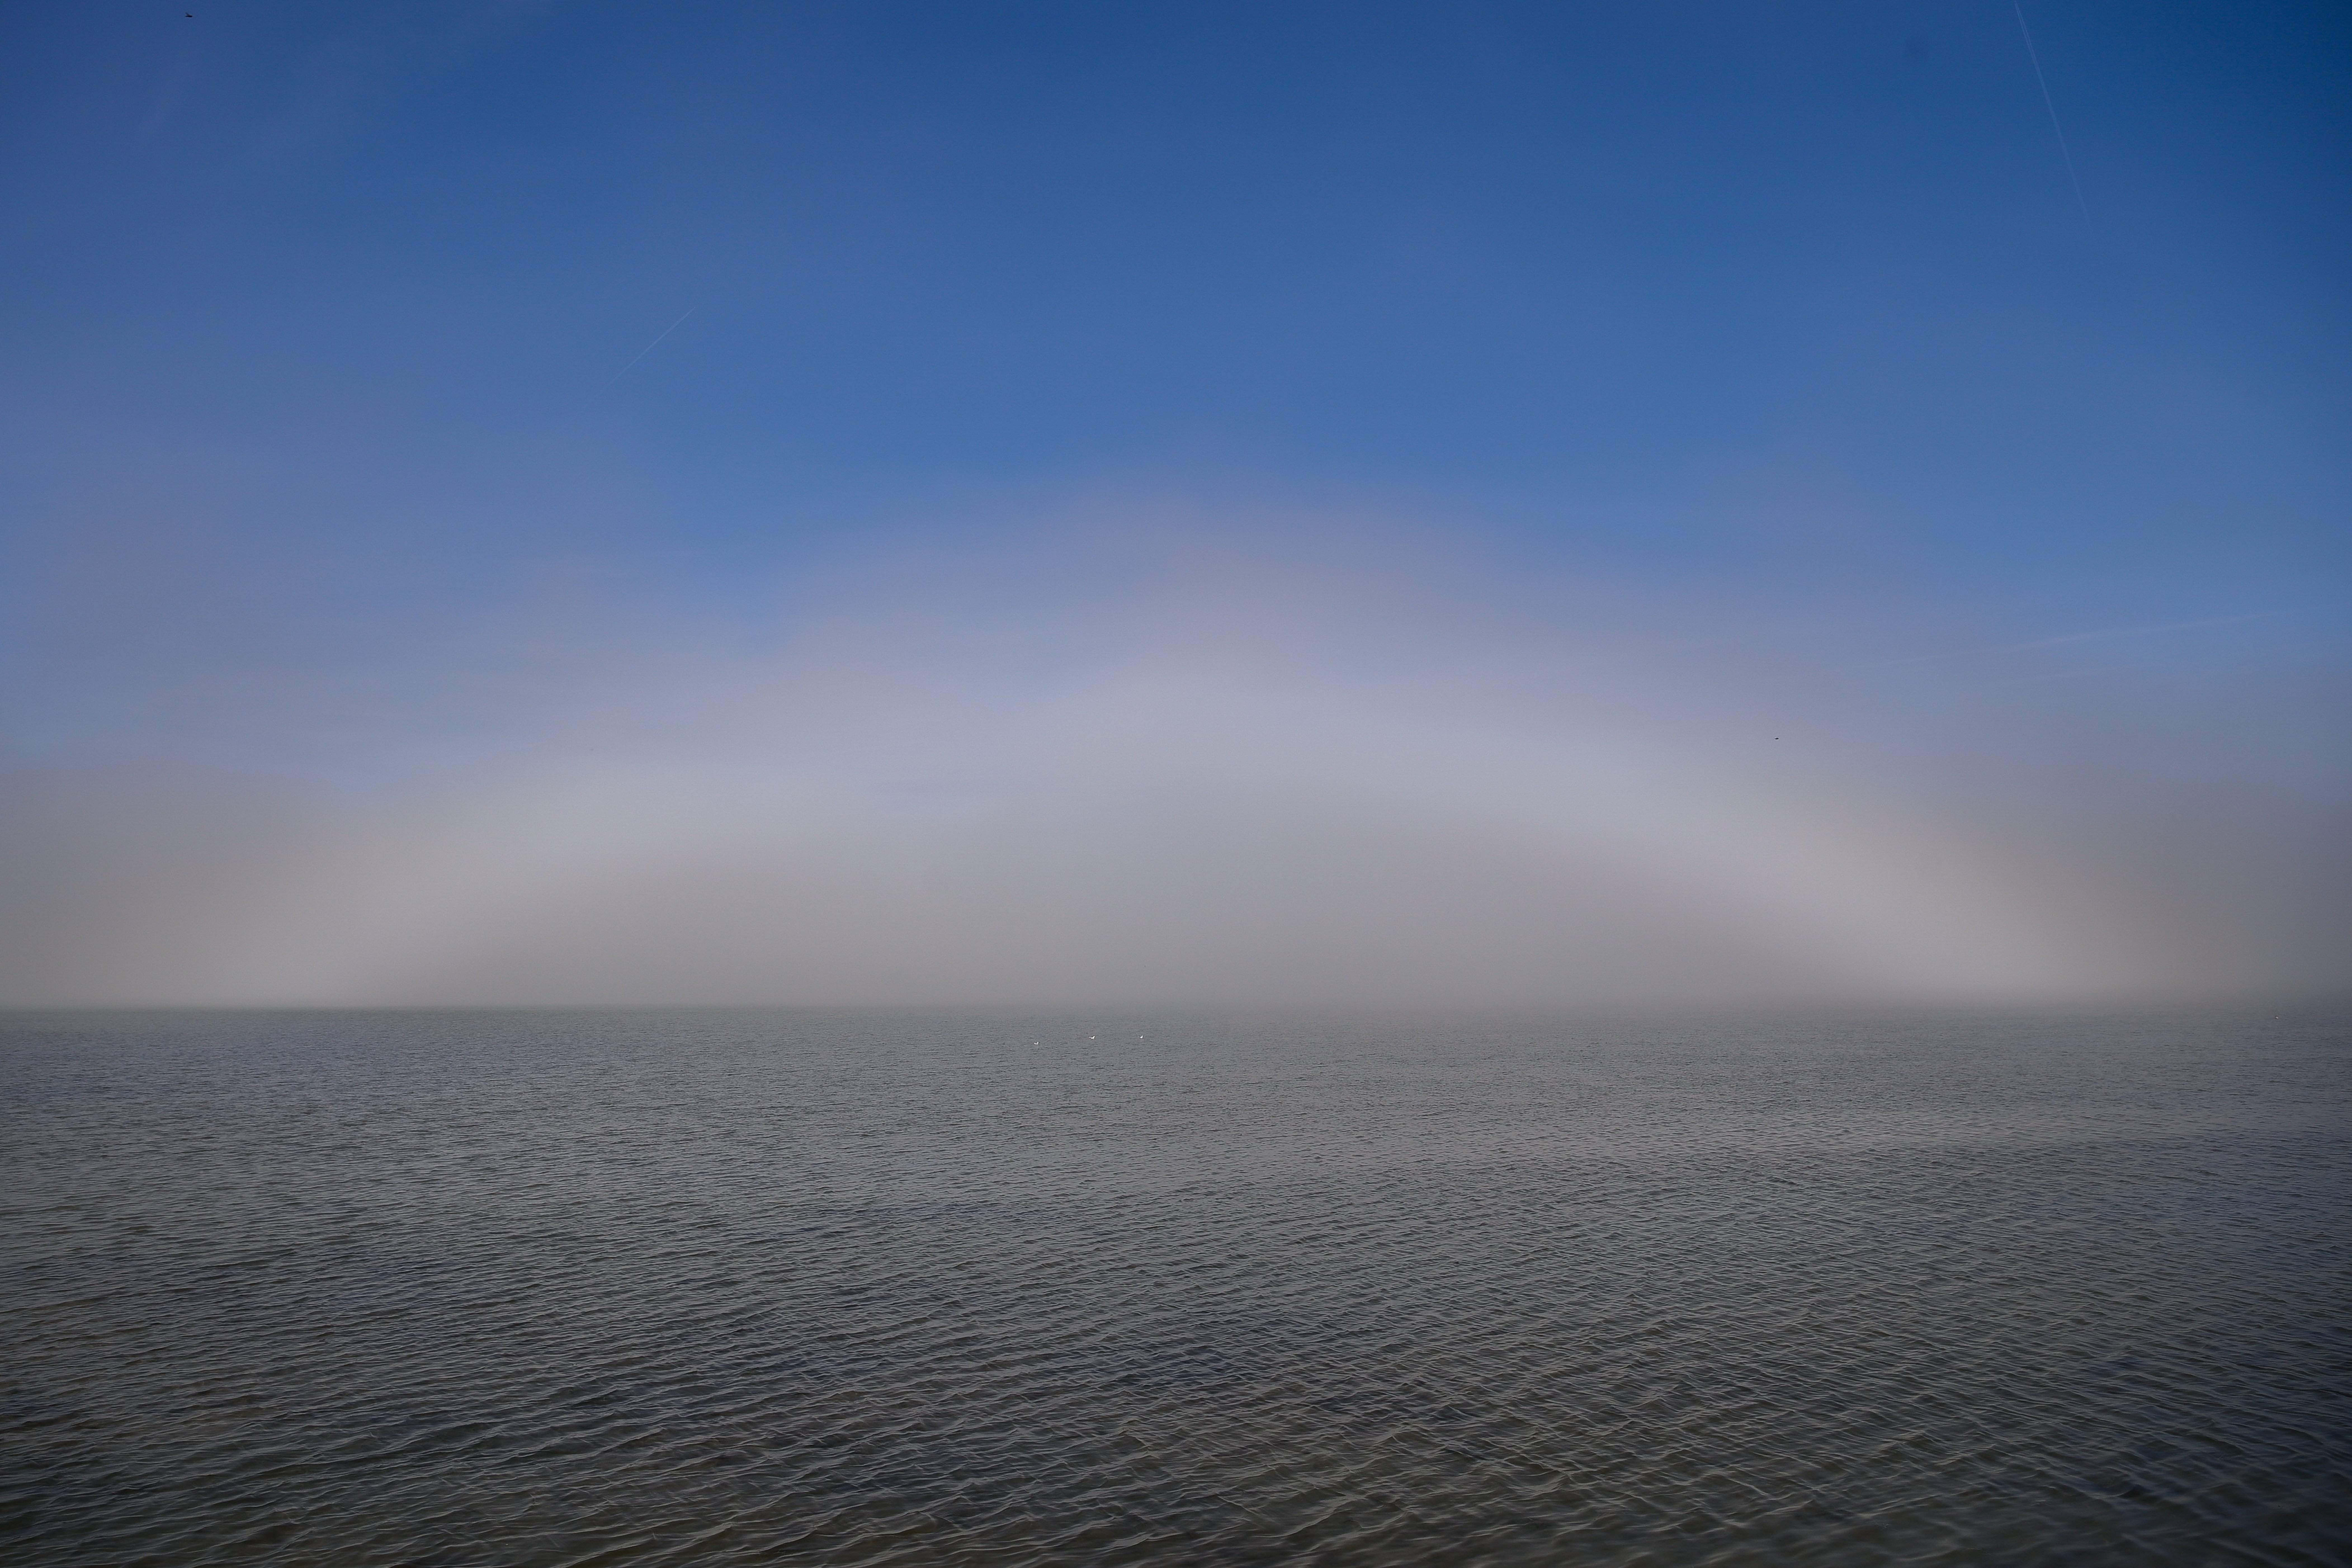 Végtelennek látszó Balaton, felette hatalmas ködív – Fotó egy különleges őszi reggelről a tónál